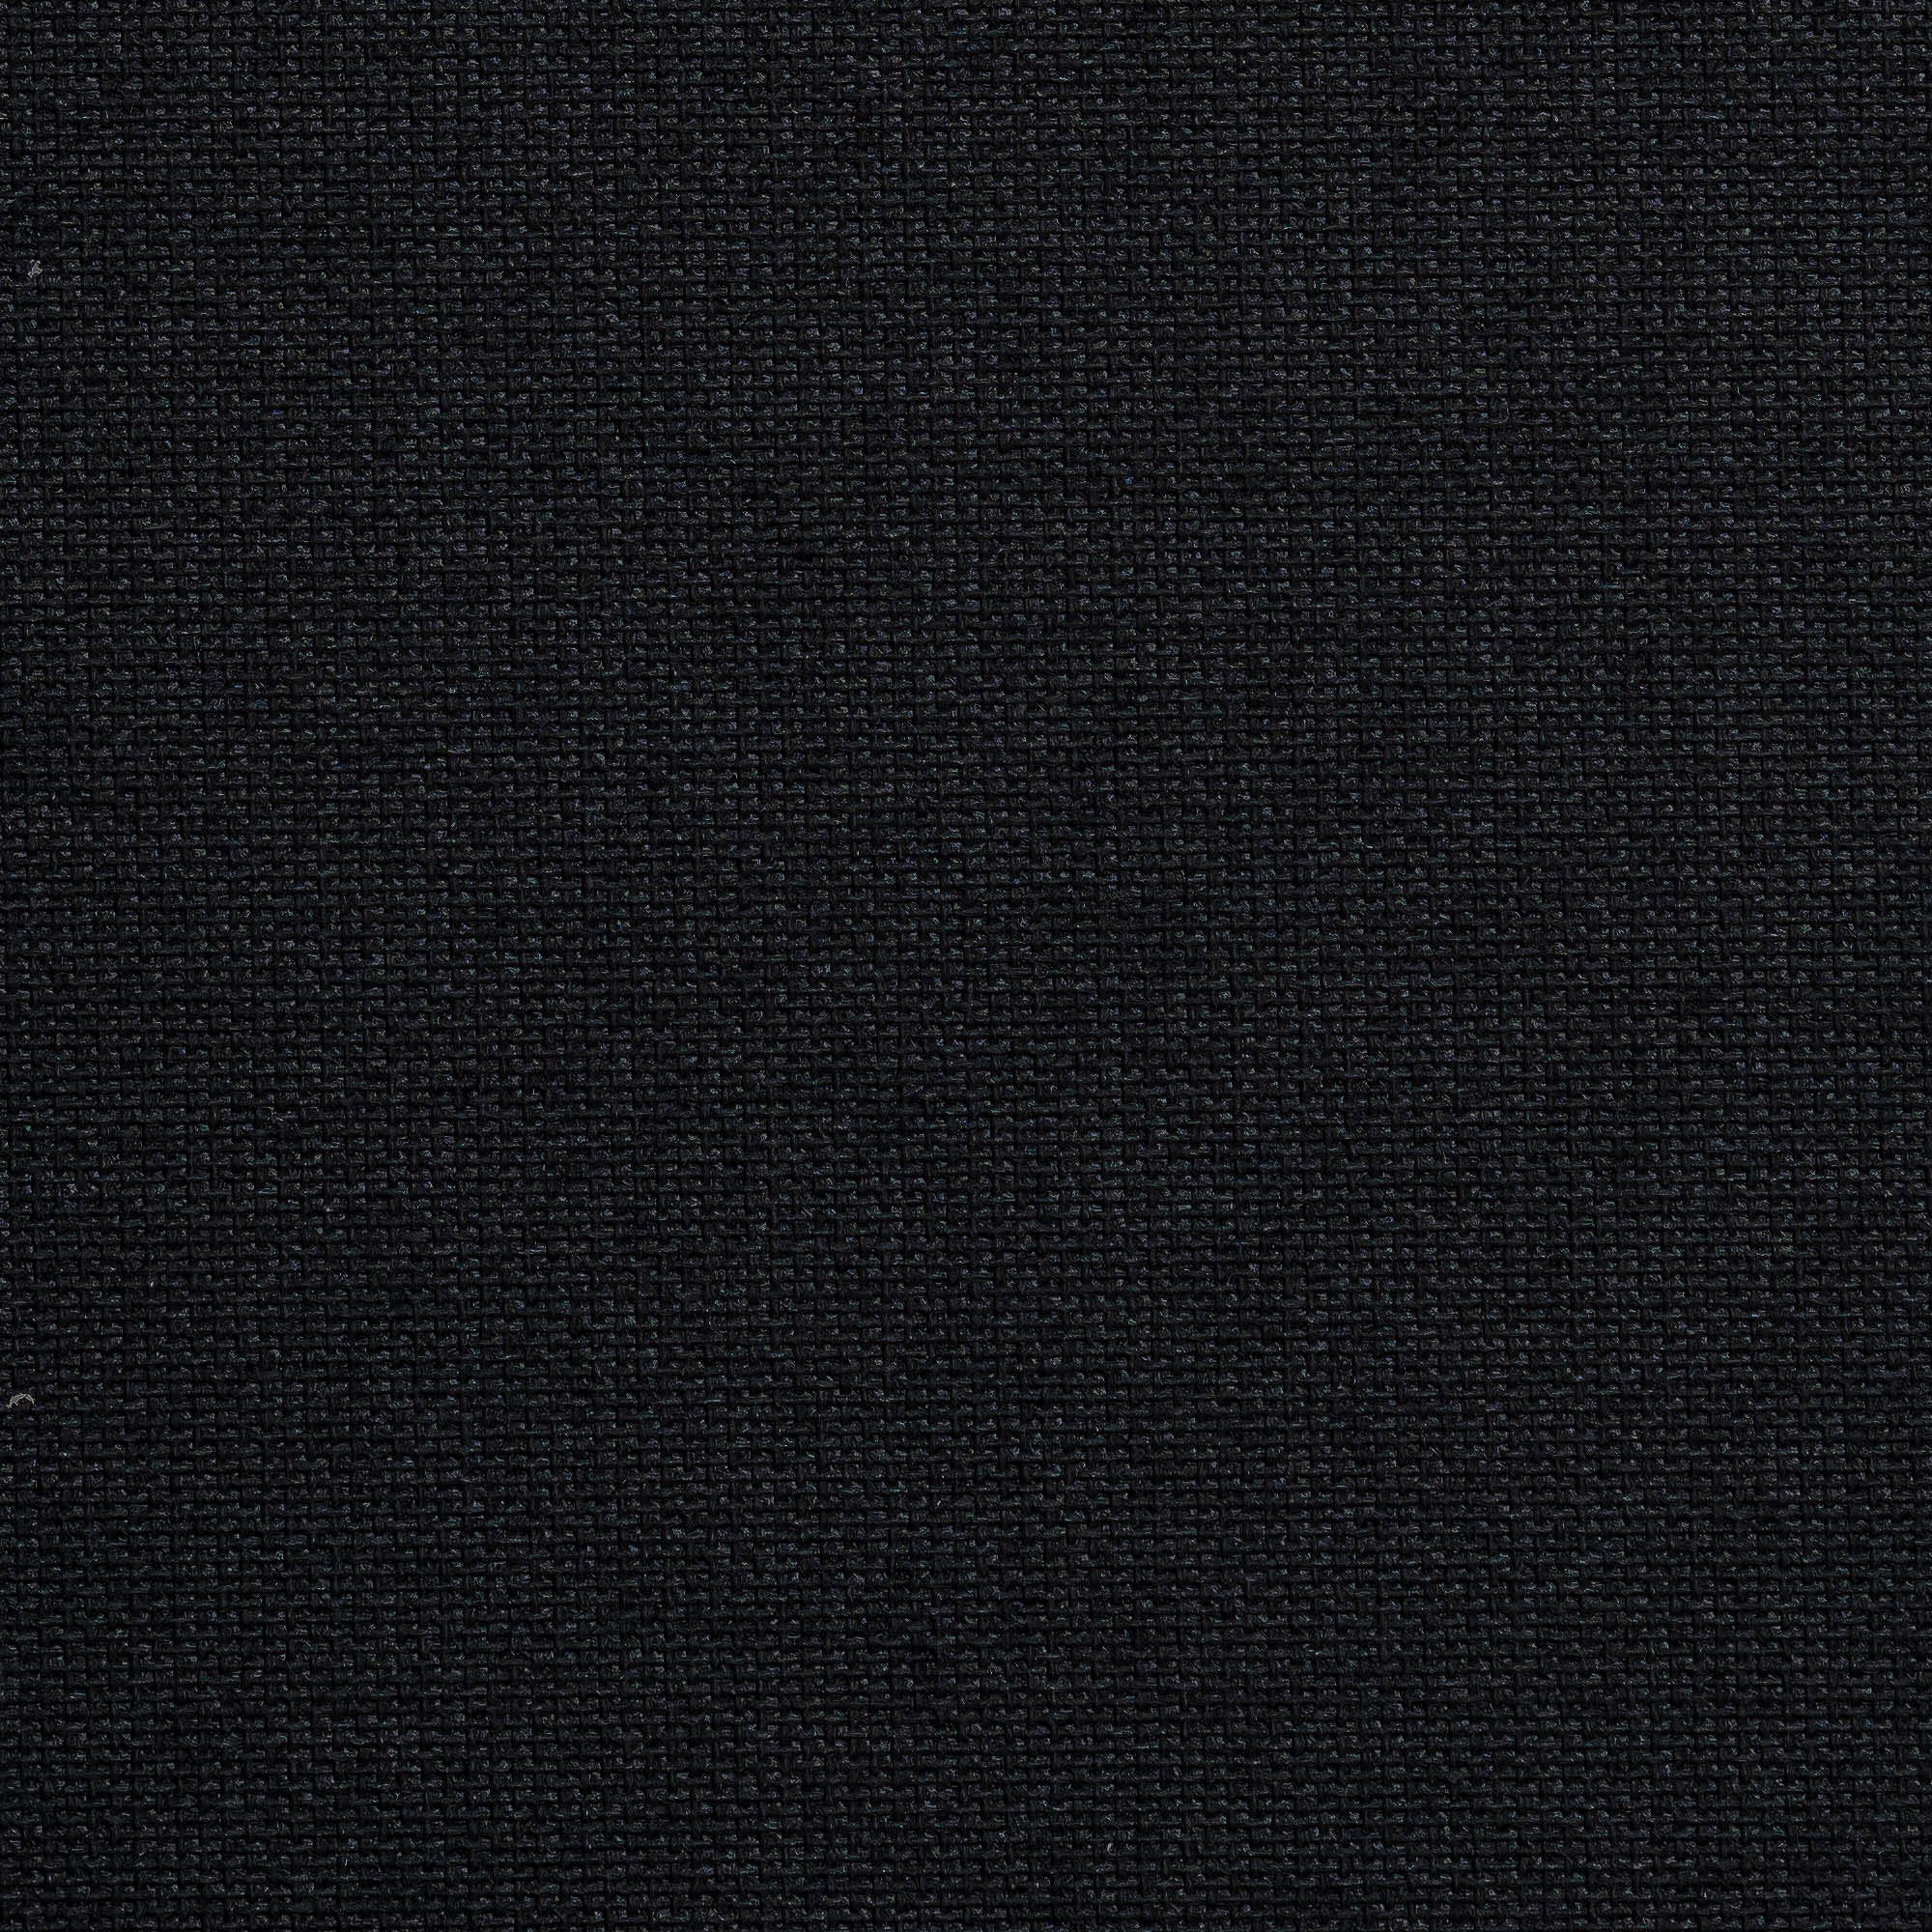 Springrollo mit Liedeco, schwarz freihängend, Deutschland Bohren, verdunkelnd, in Rollo verschraubt, Uni, Hergestellt